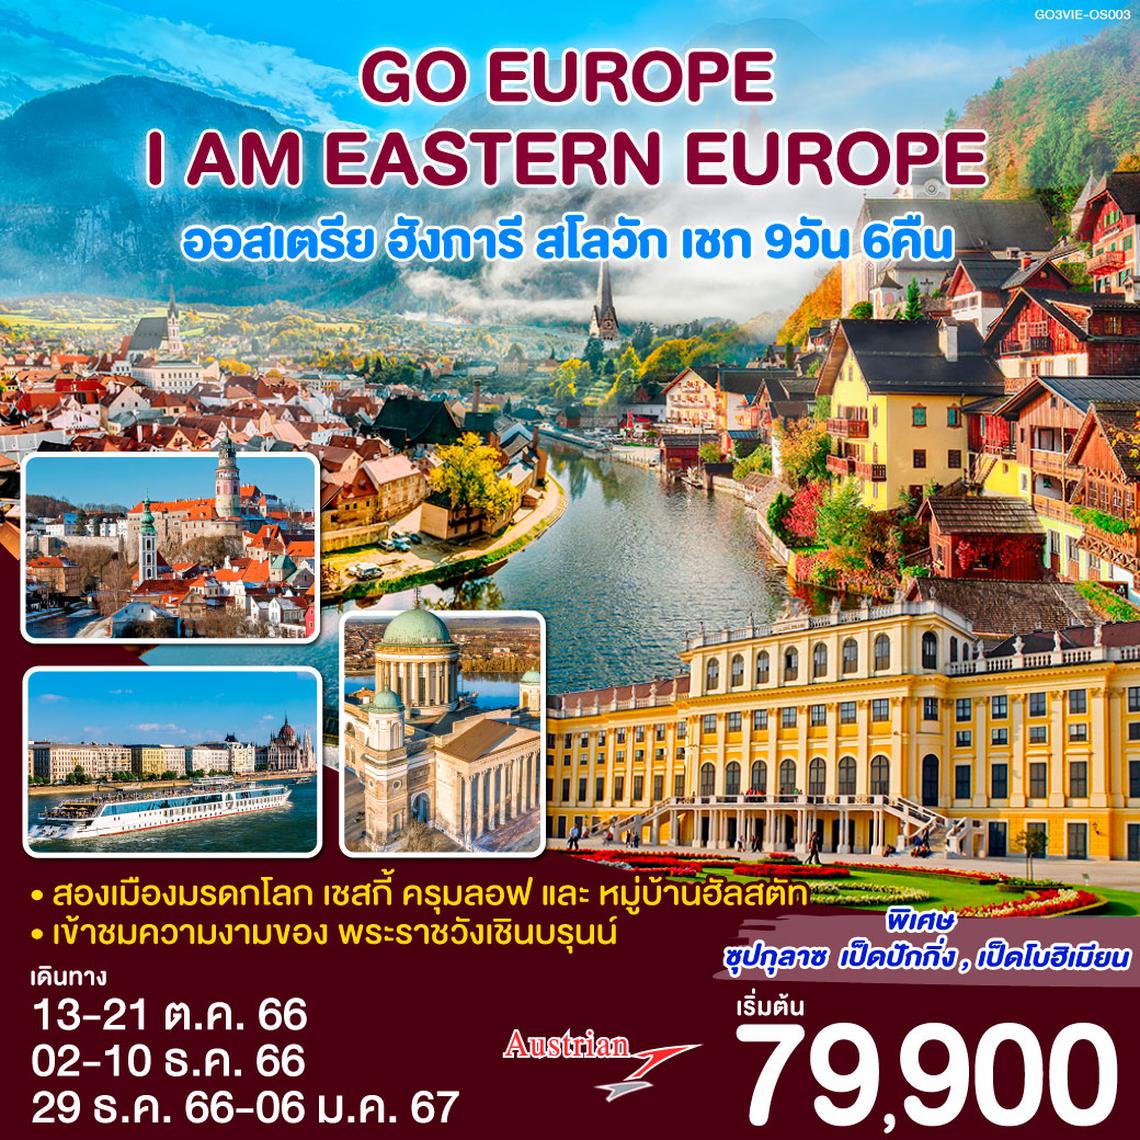 ทัวร์ยุโรปตะวันออก I AM EASTERN EUROPE ออสเตรีย ฮังการี สโลวัก เชก 9 วัน 6 คืน